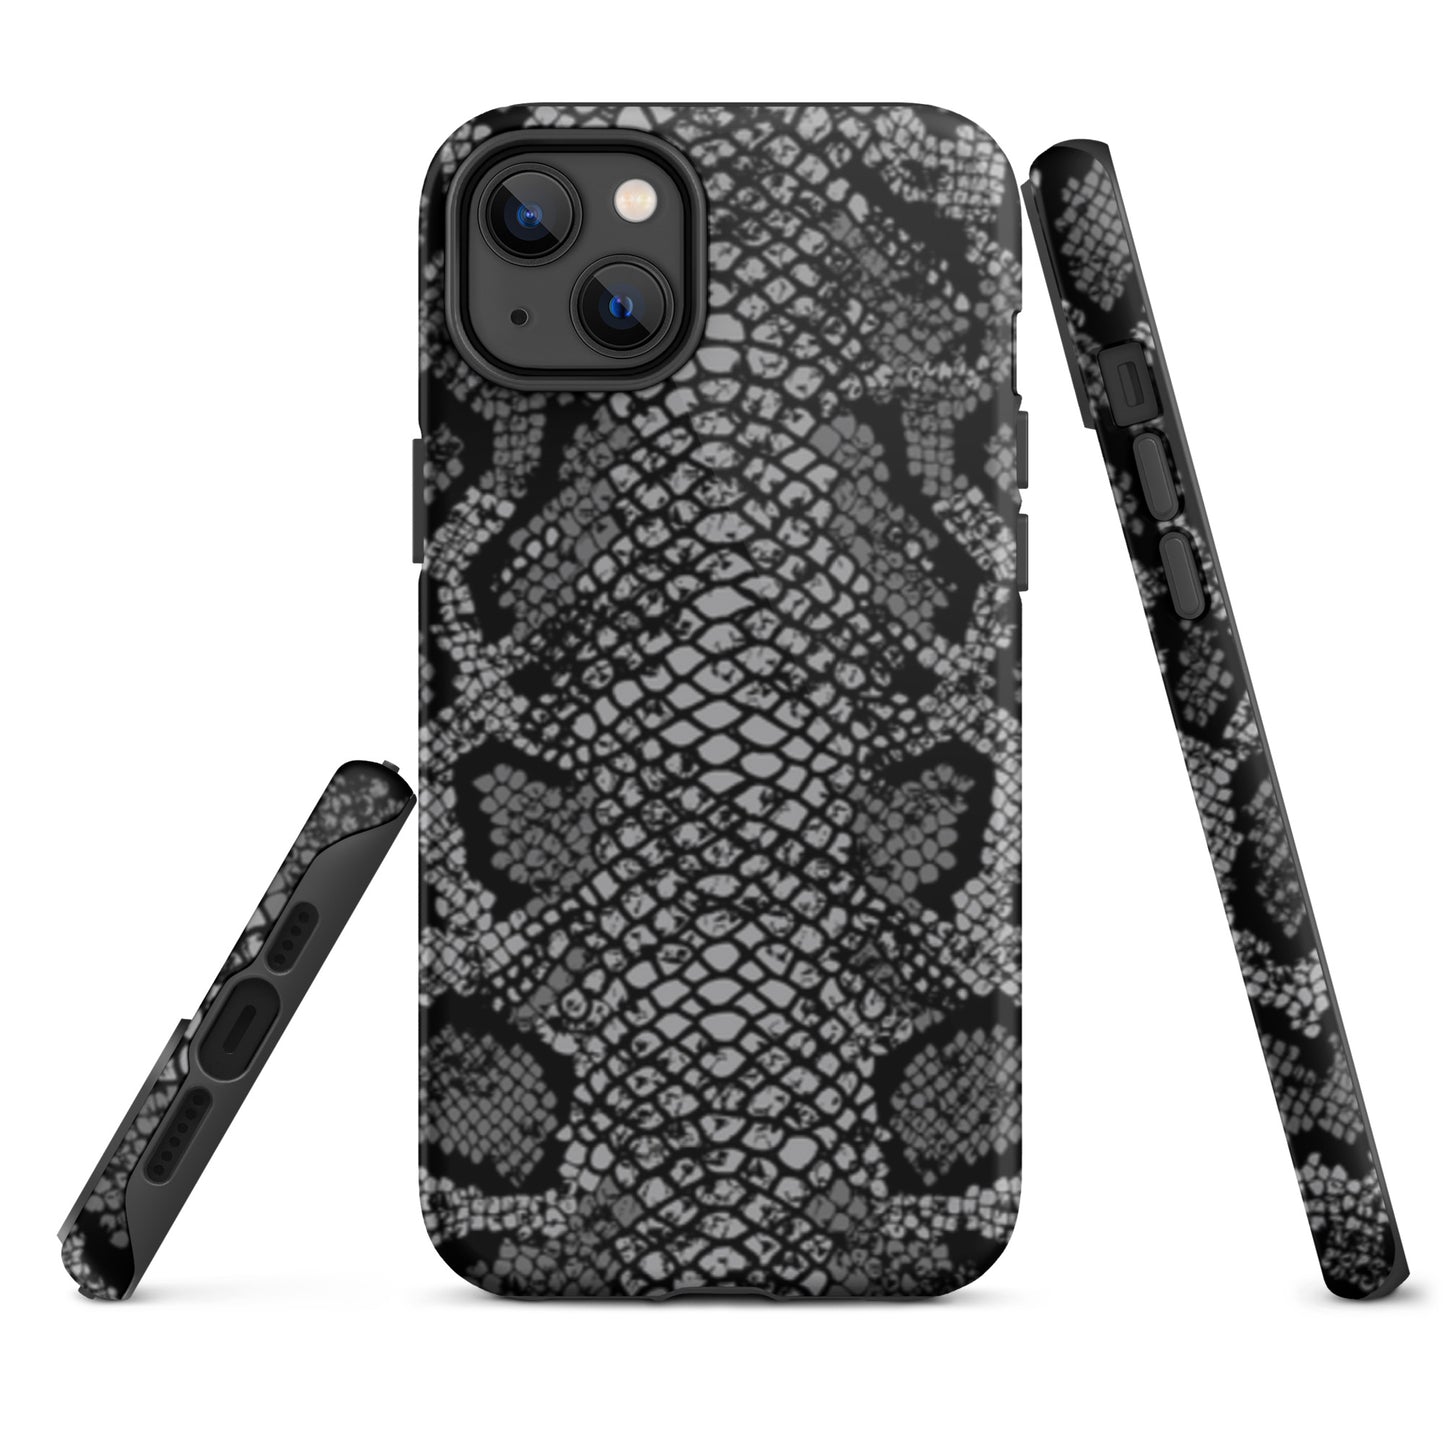 iCase Black Snake HardCase iPhone phone case